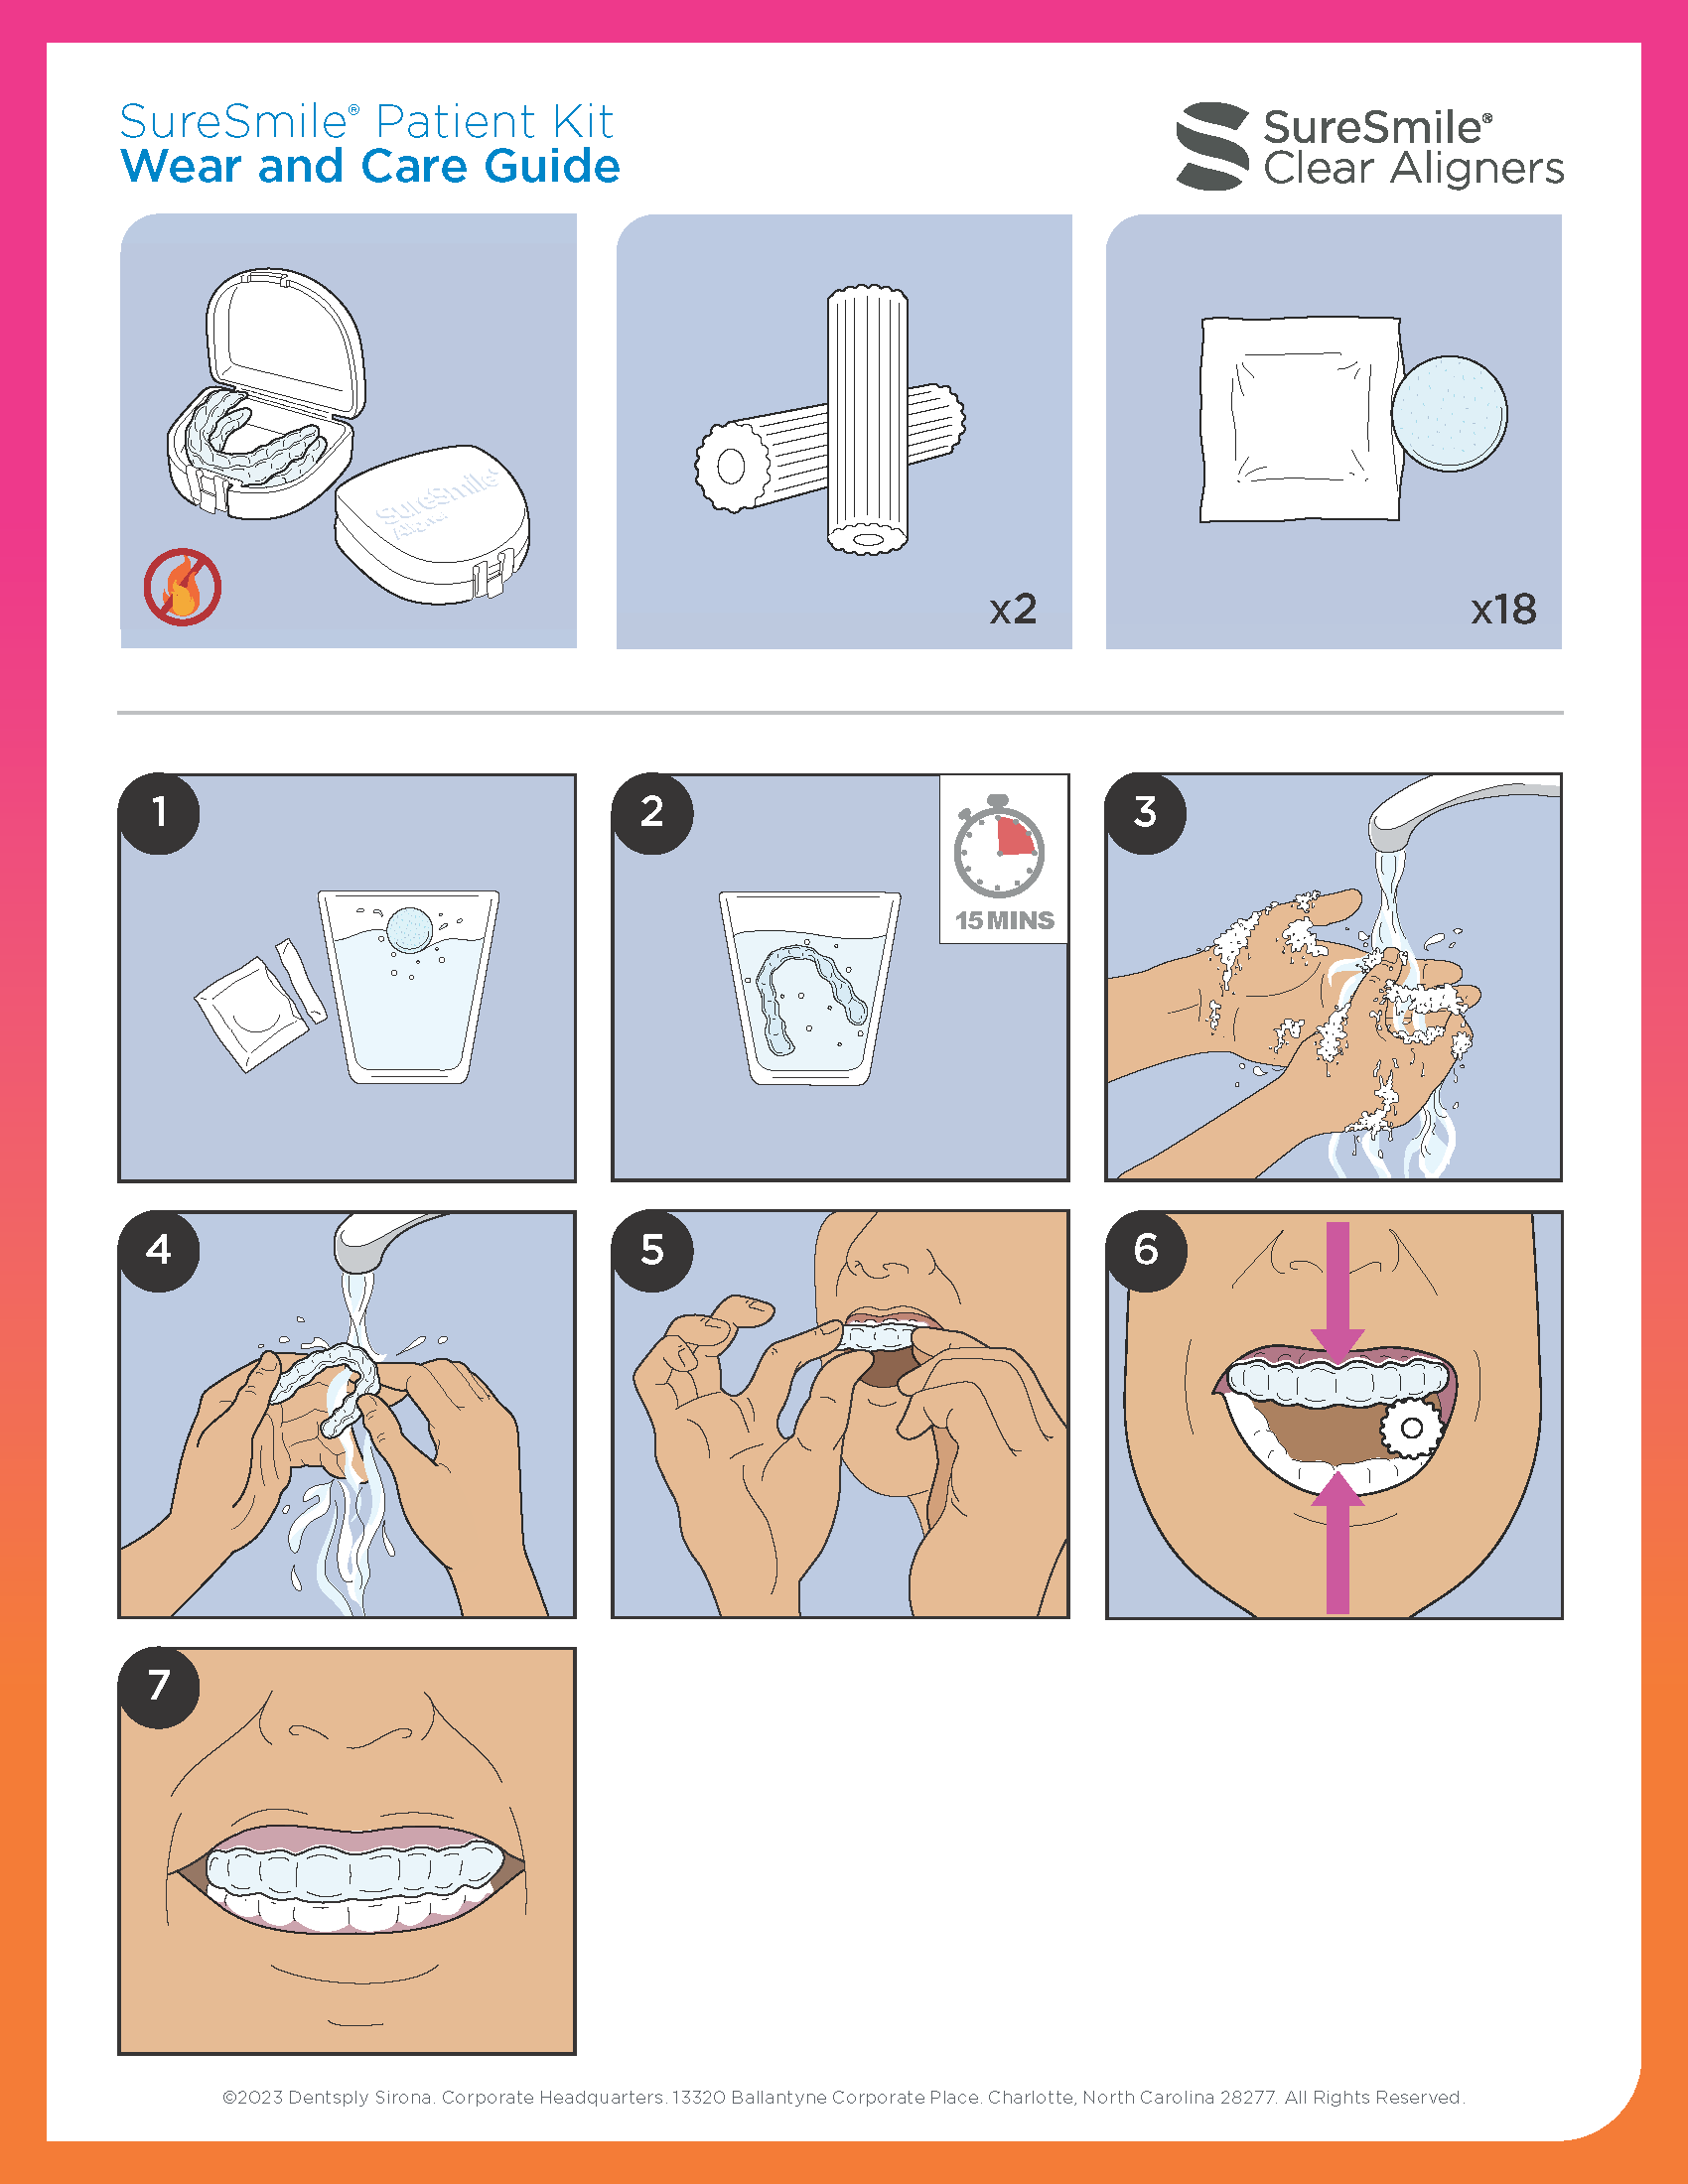 Wear & Care Guide Patient Kit